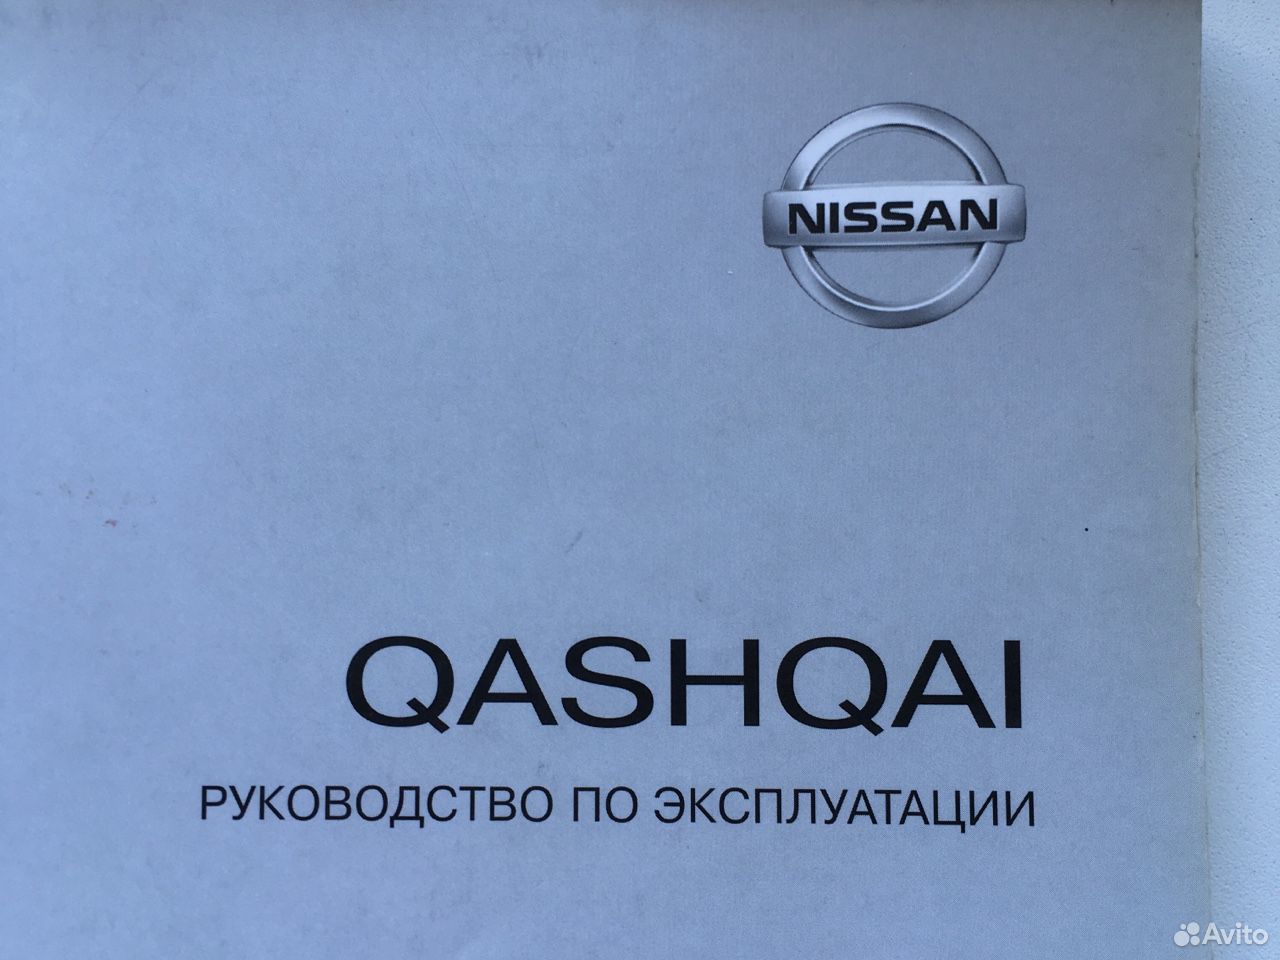 Руководство по эксплуатации Nissan Qashqai 89825376498 купить 1